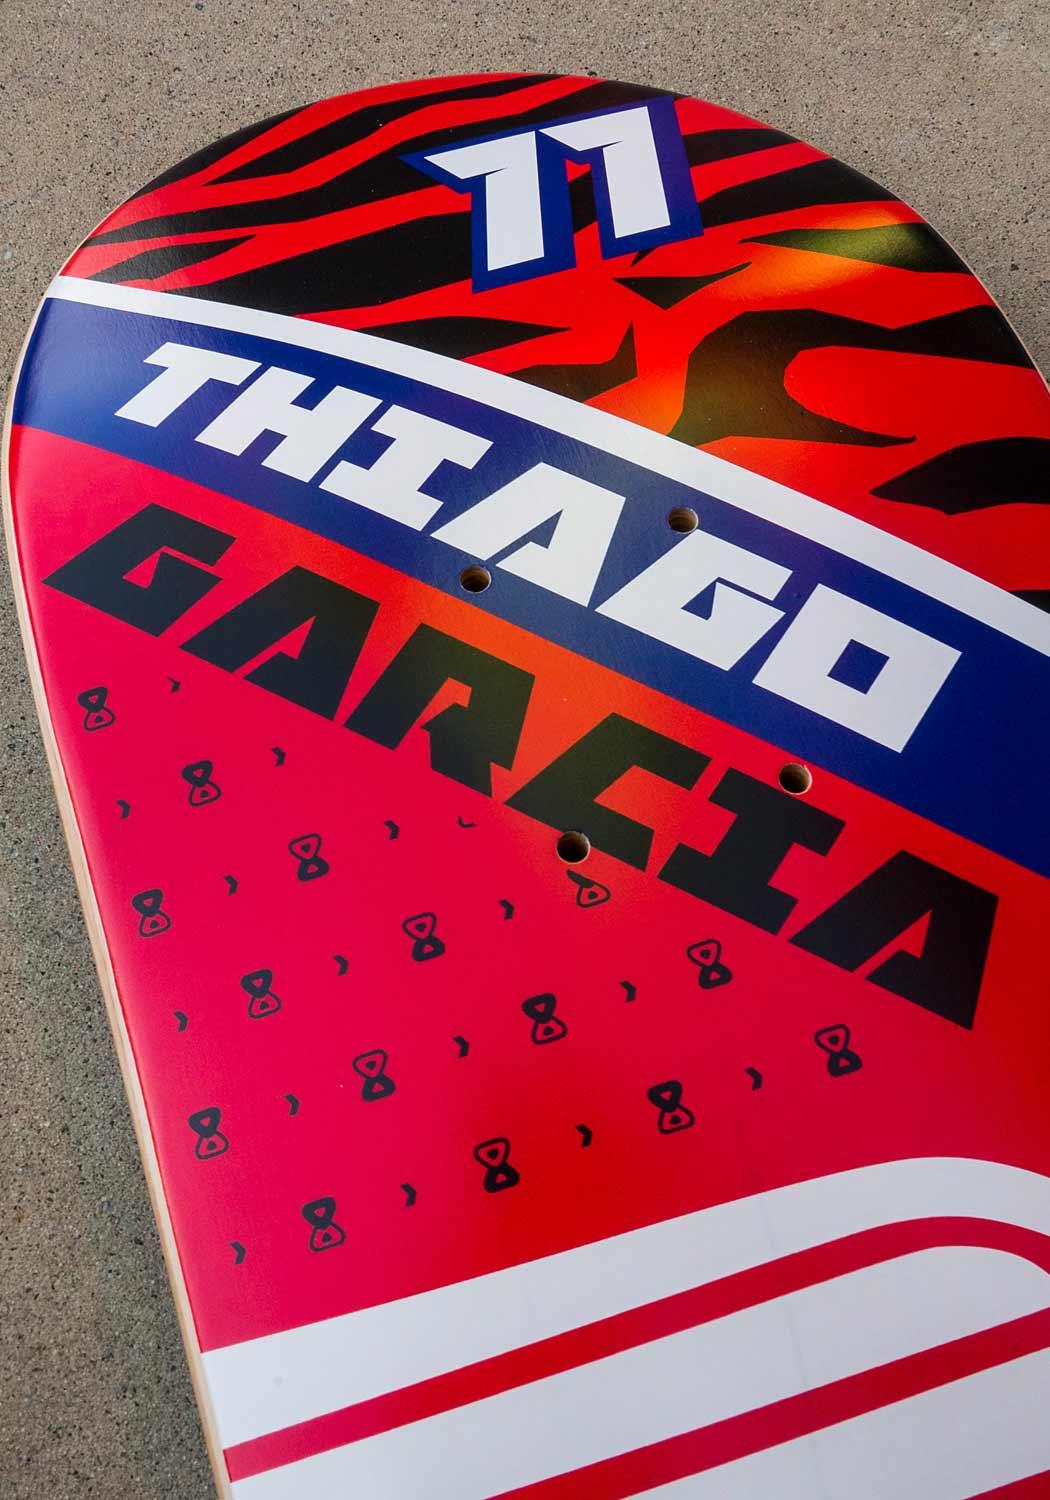 Shape Maple Race Team Thiago 8.2" - Future Skateboards